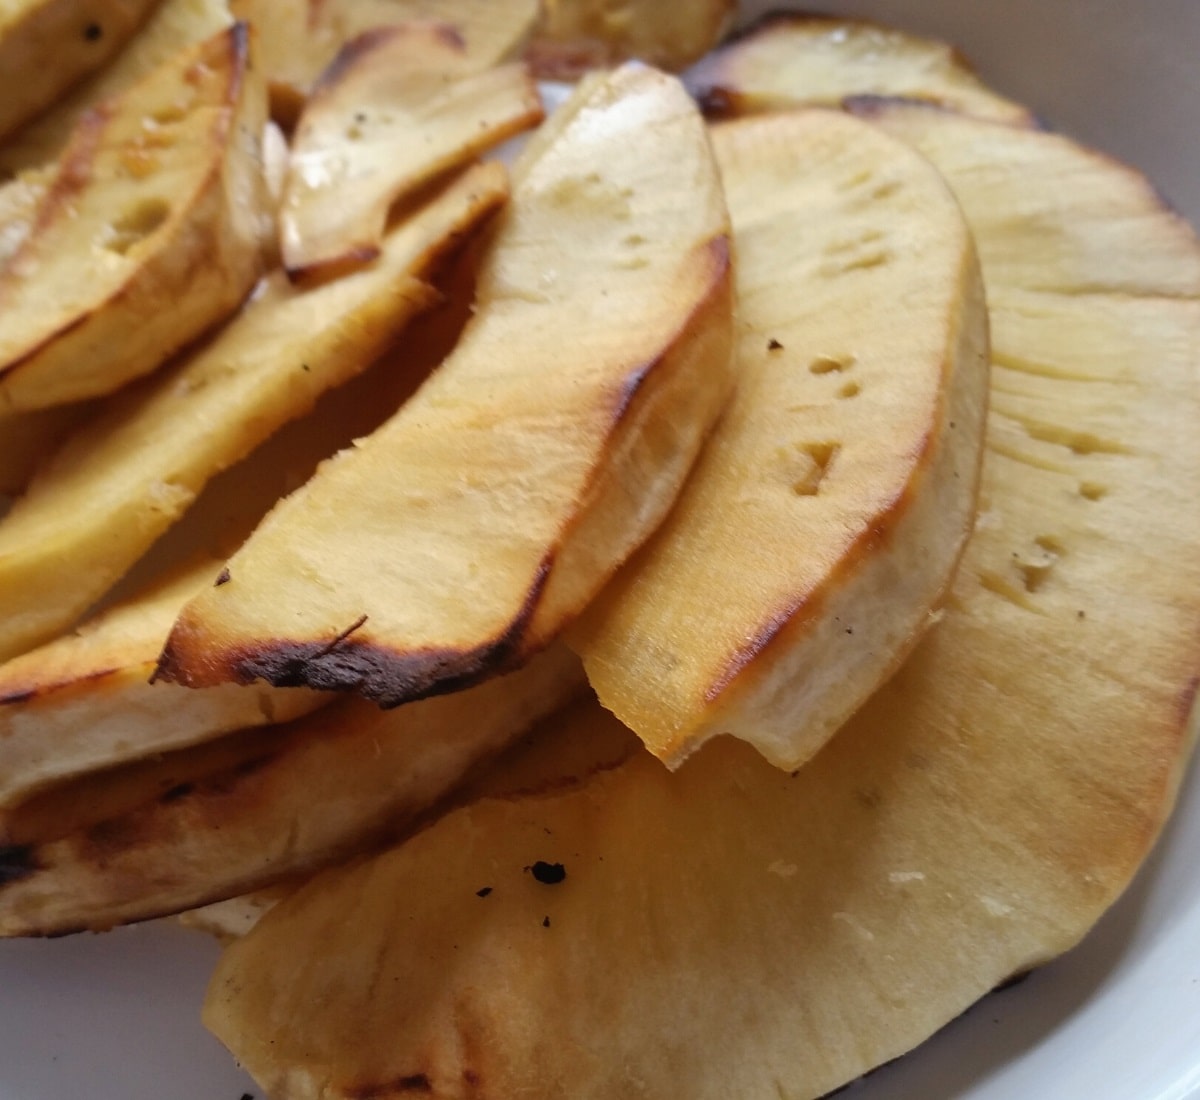 Baked breadfruit slices